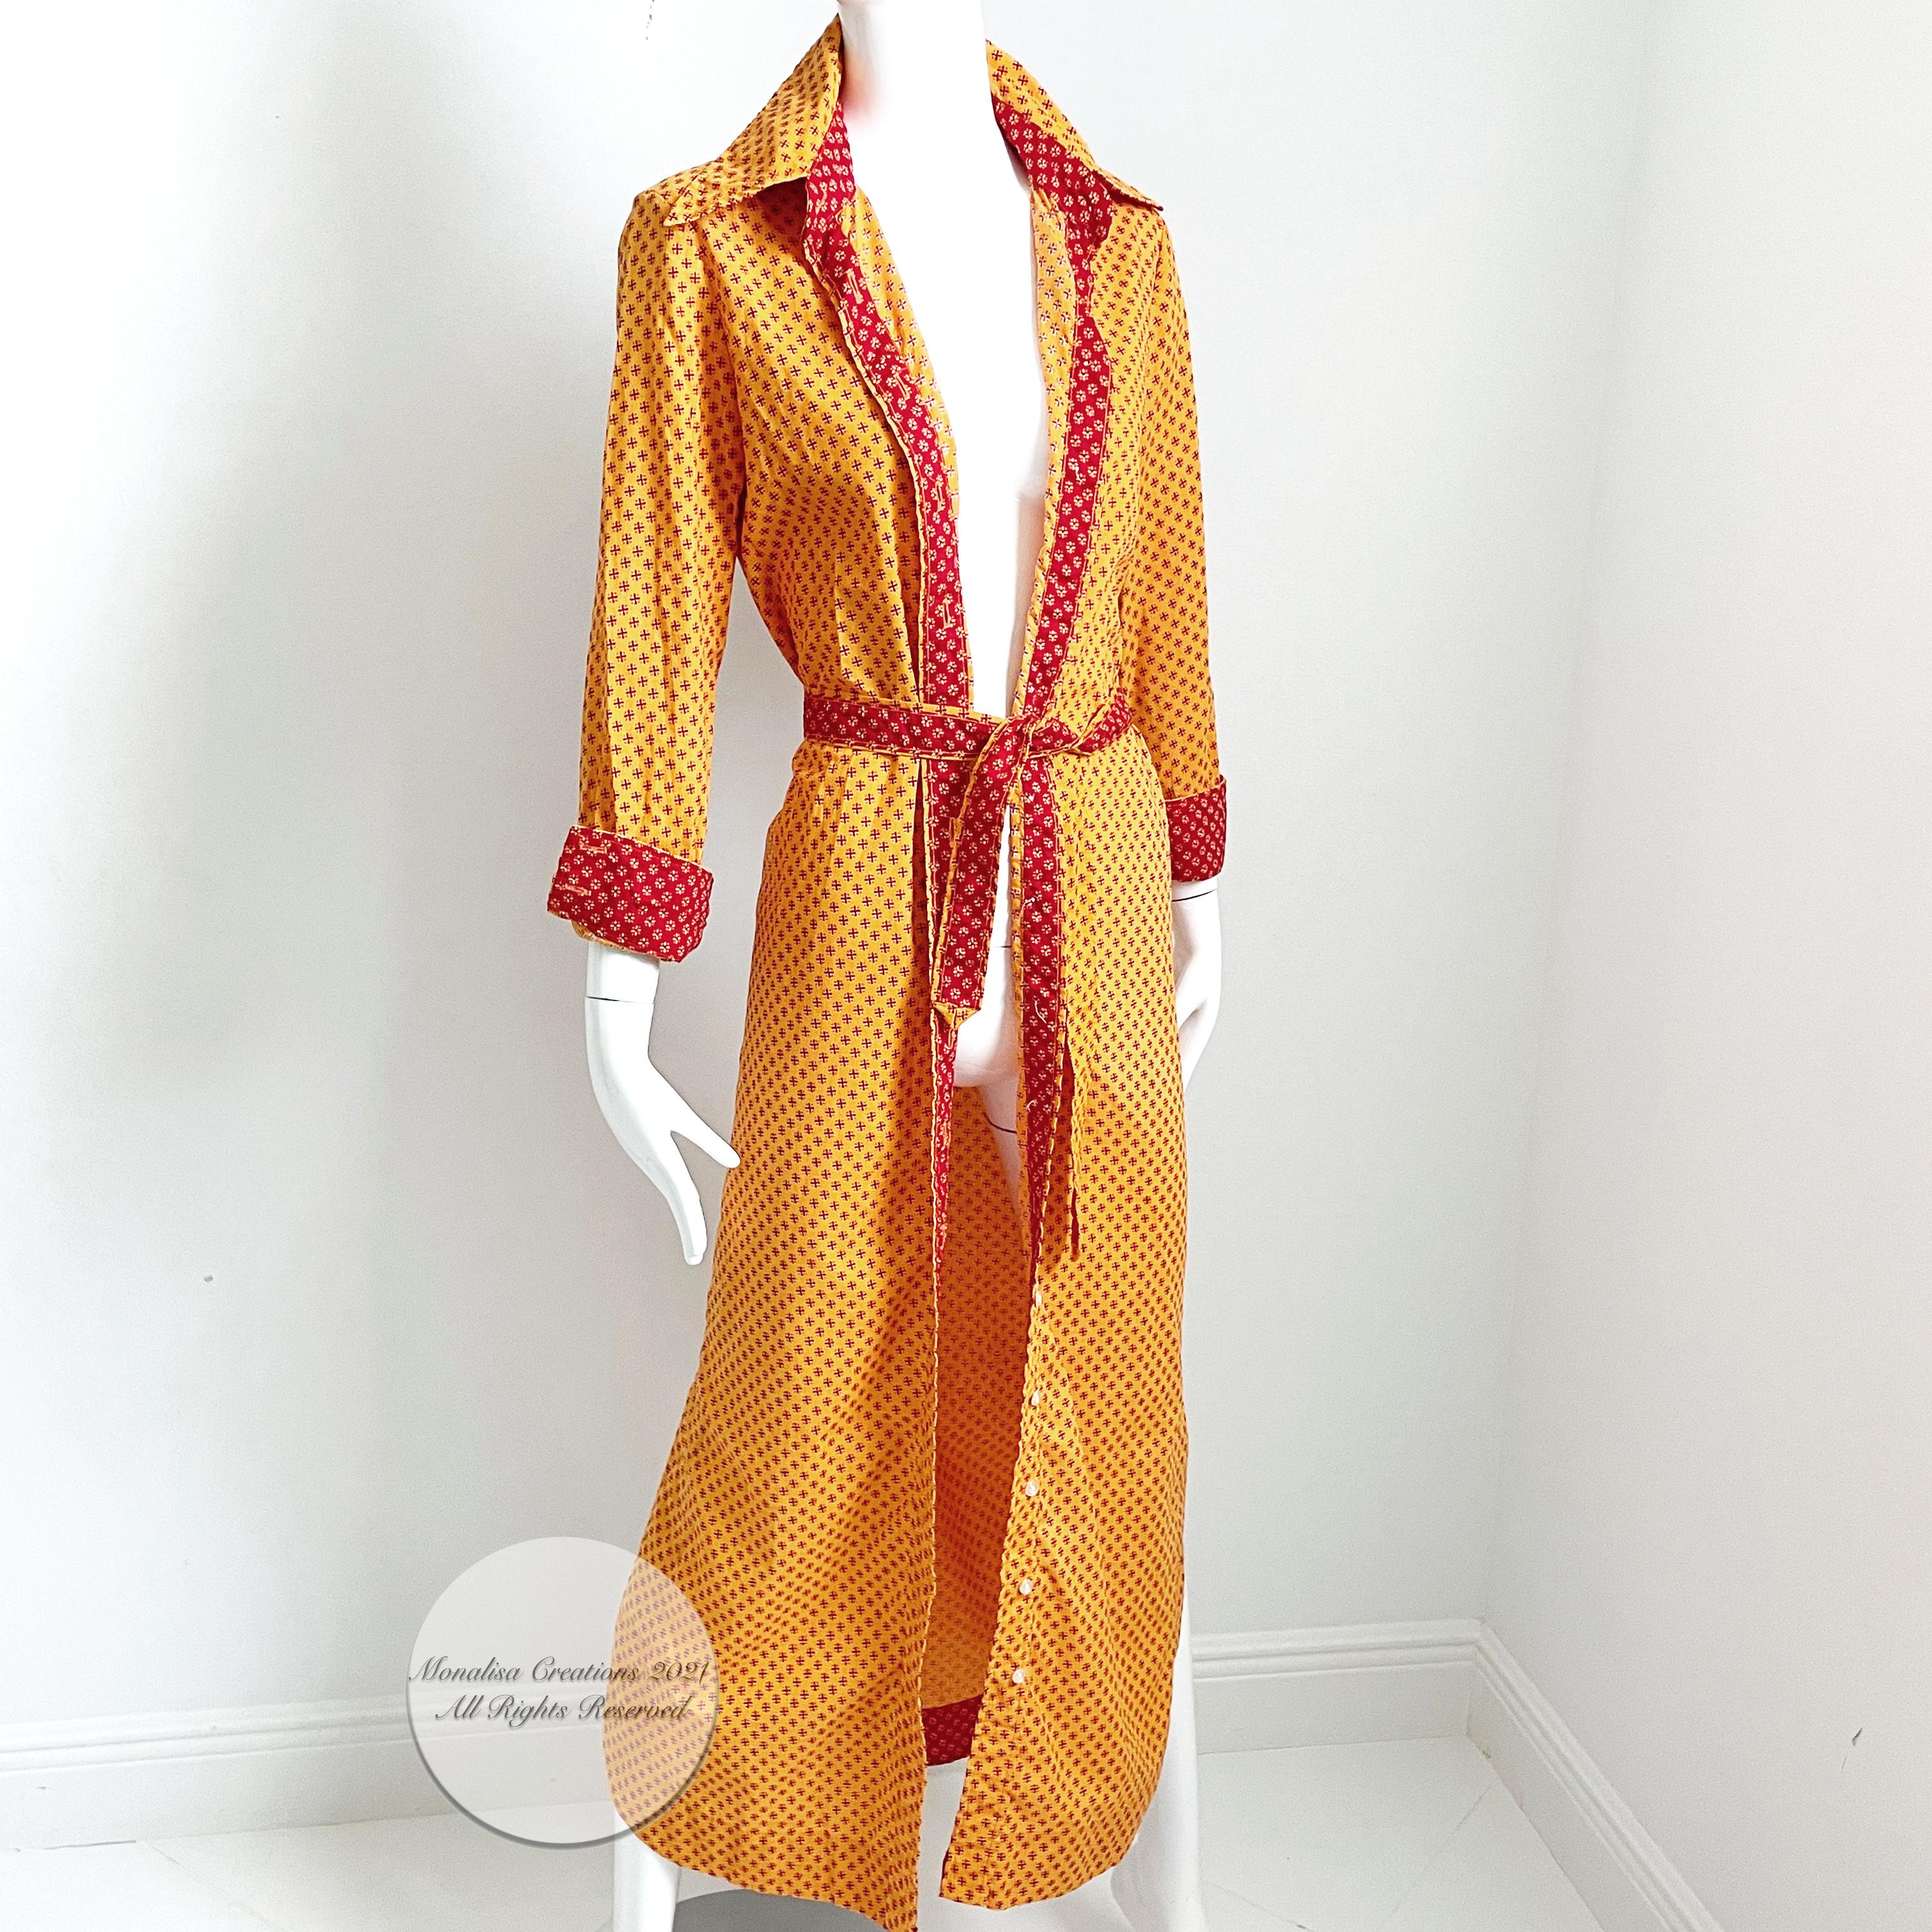 Geoffrey Beene Dress Button Front Cotton Shirtwaist + Belt Bold Daisy Print 70s 2